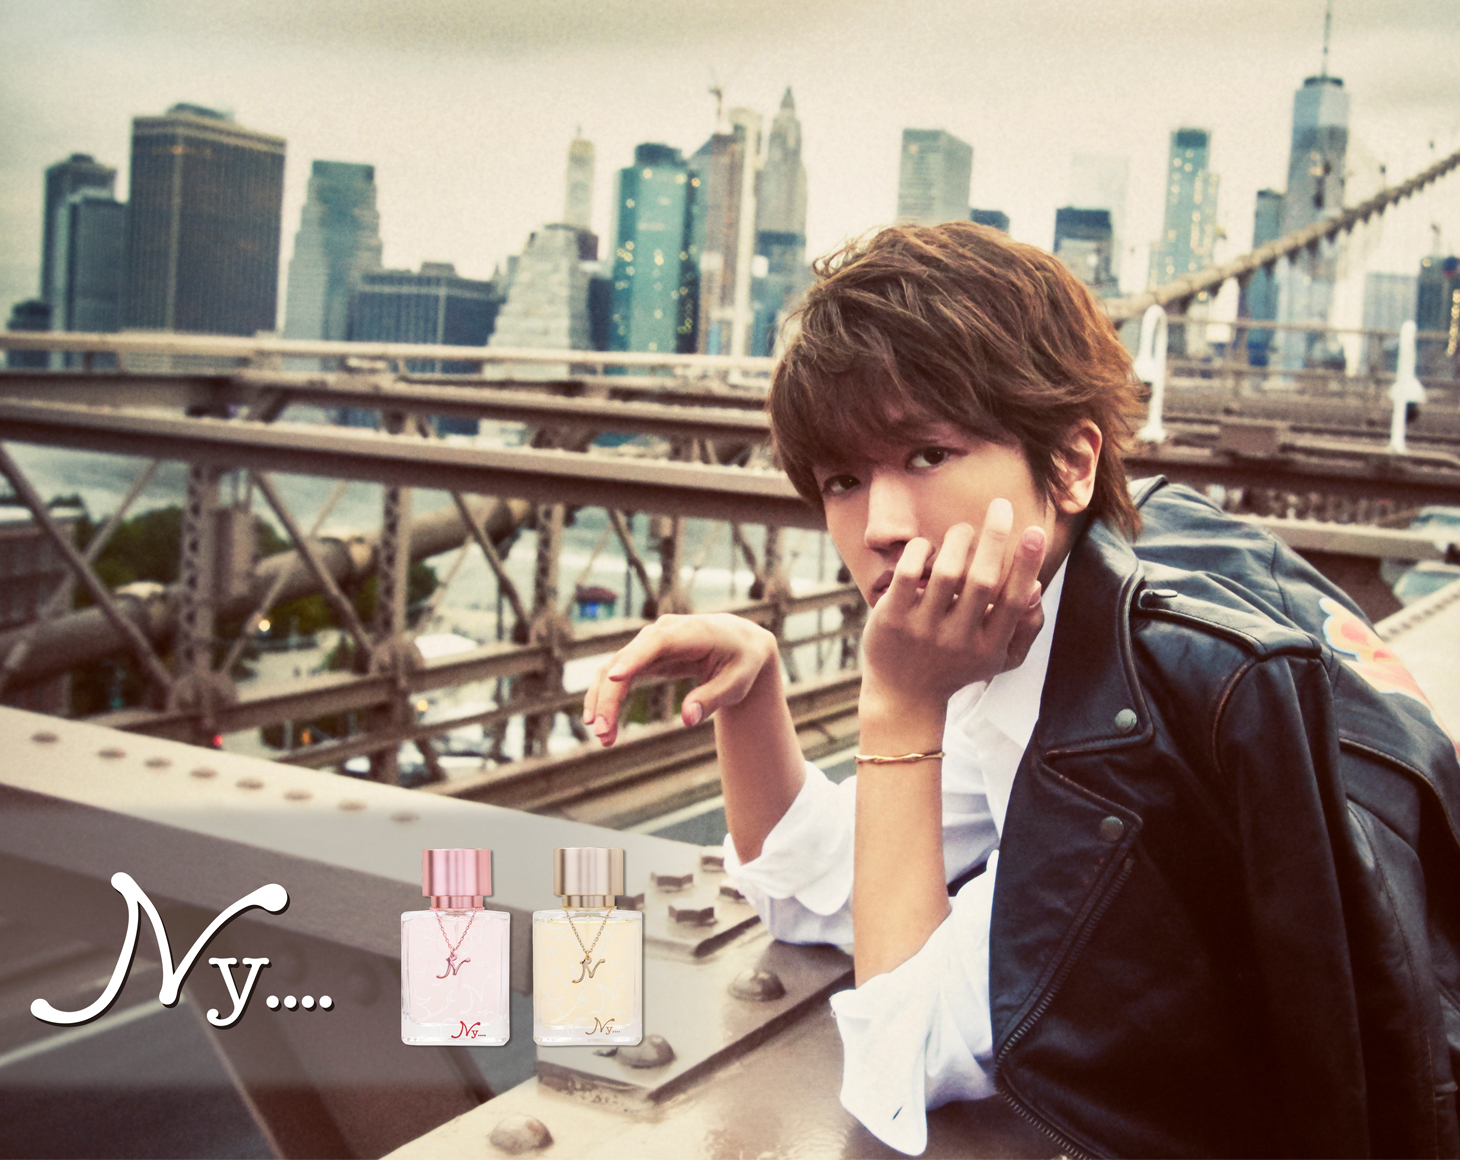 Nissy(西島隆弘)プロデュース香水ブランド「Ny….」ポップアップストア ...